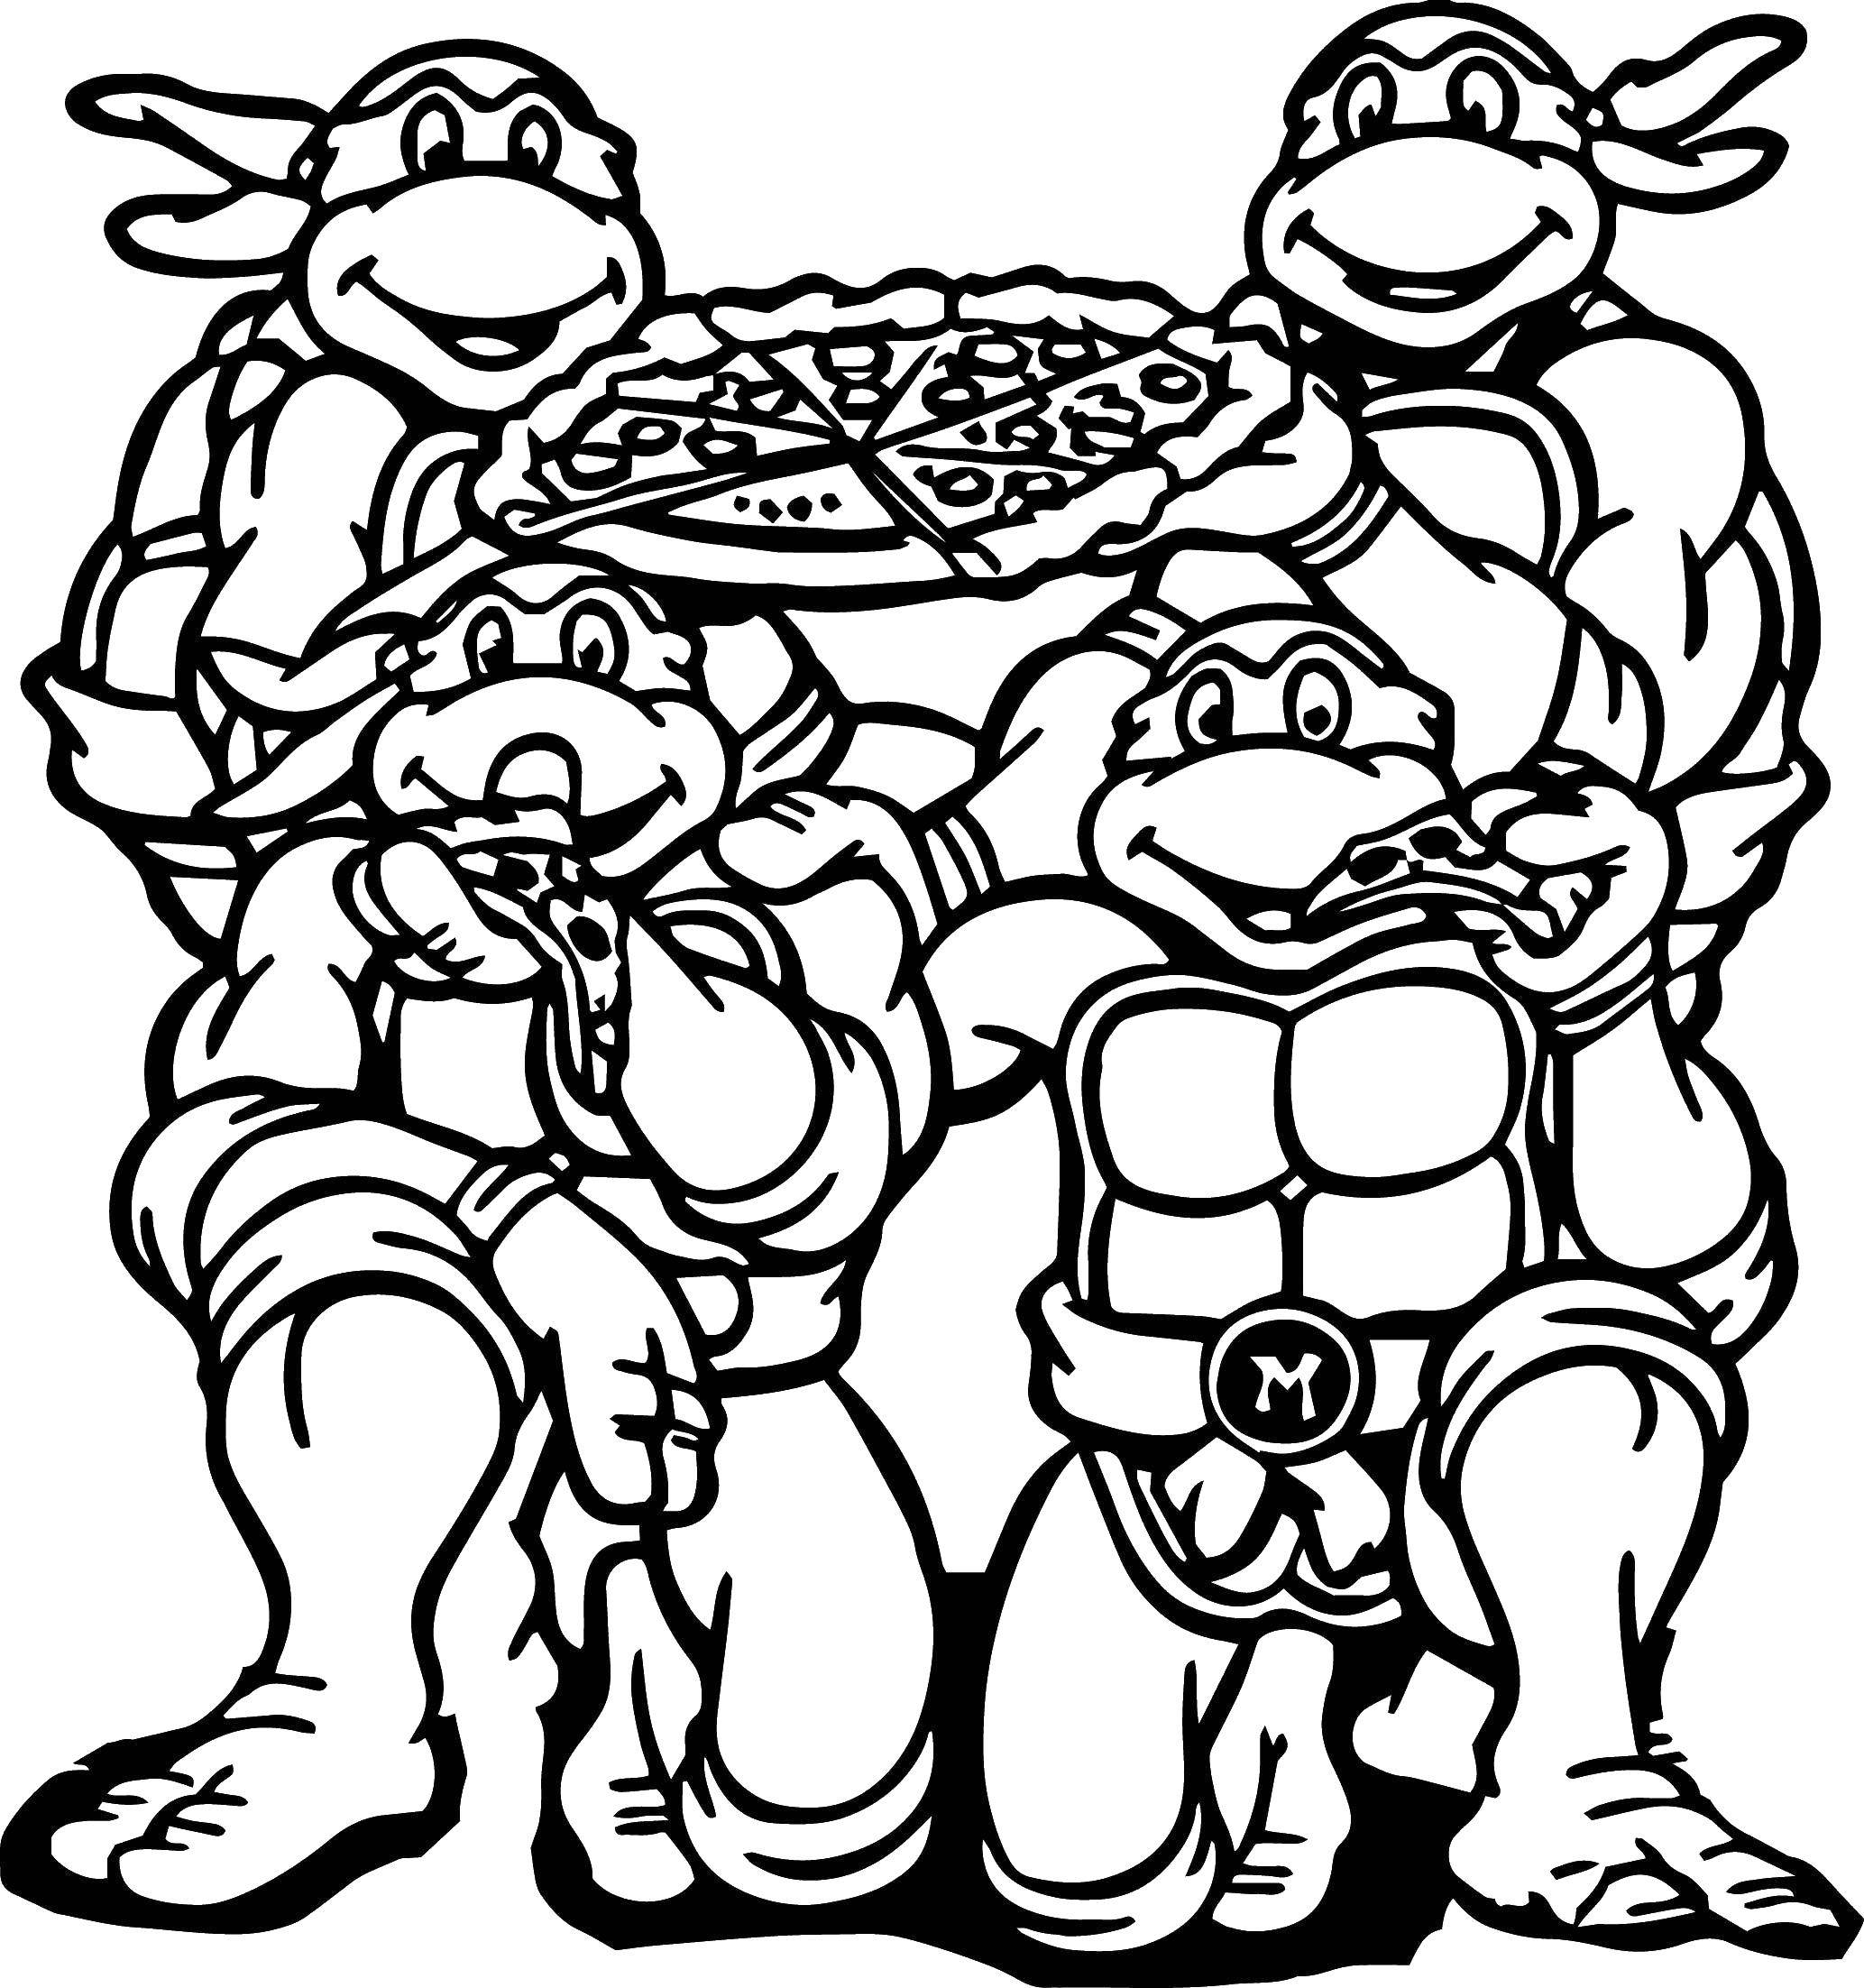 Название: Раскраска Черепашки ниндзя любят кушать пиццу. Категория: черепашки ниндзя. Теги: черепашки ниндзя.